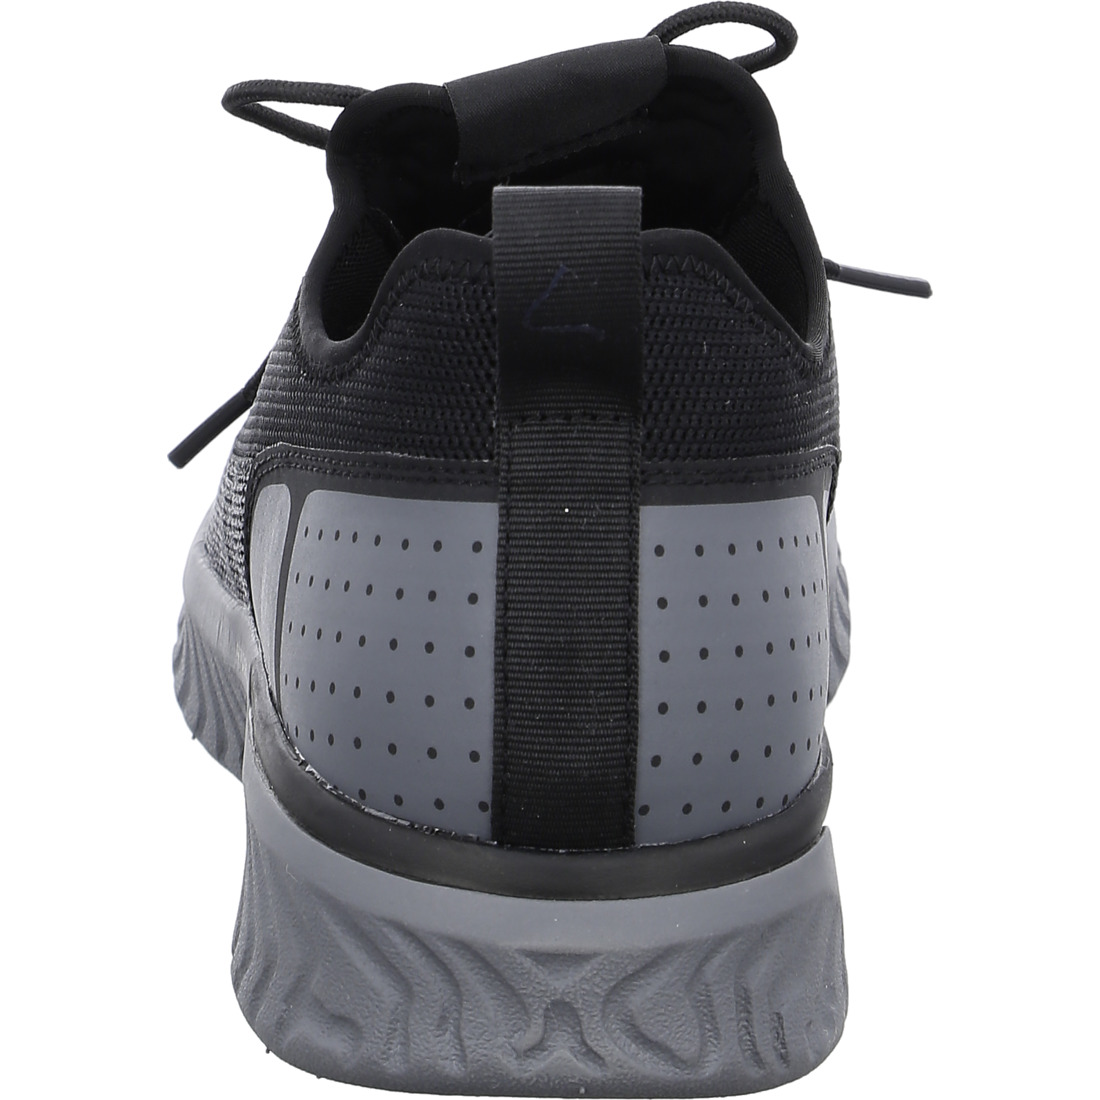 Chaussures à lacets*Ara Shoes Chaussures à lacets Baskets San Diego noir gris